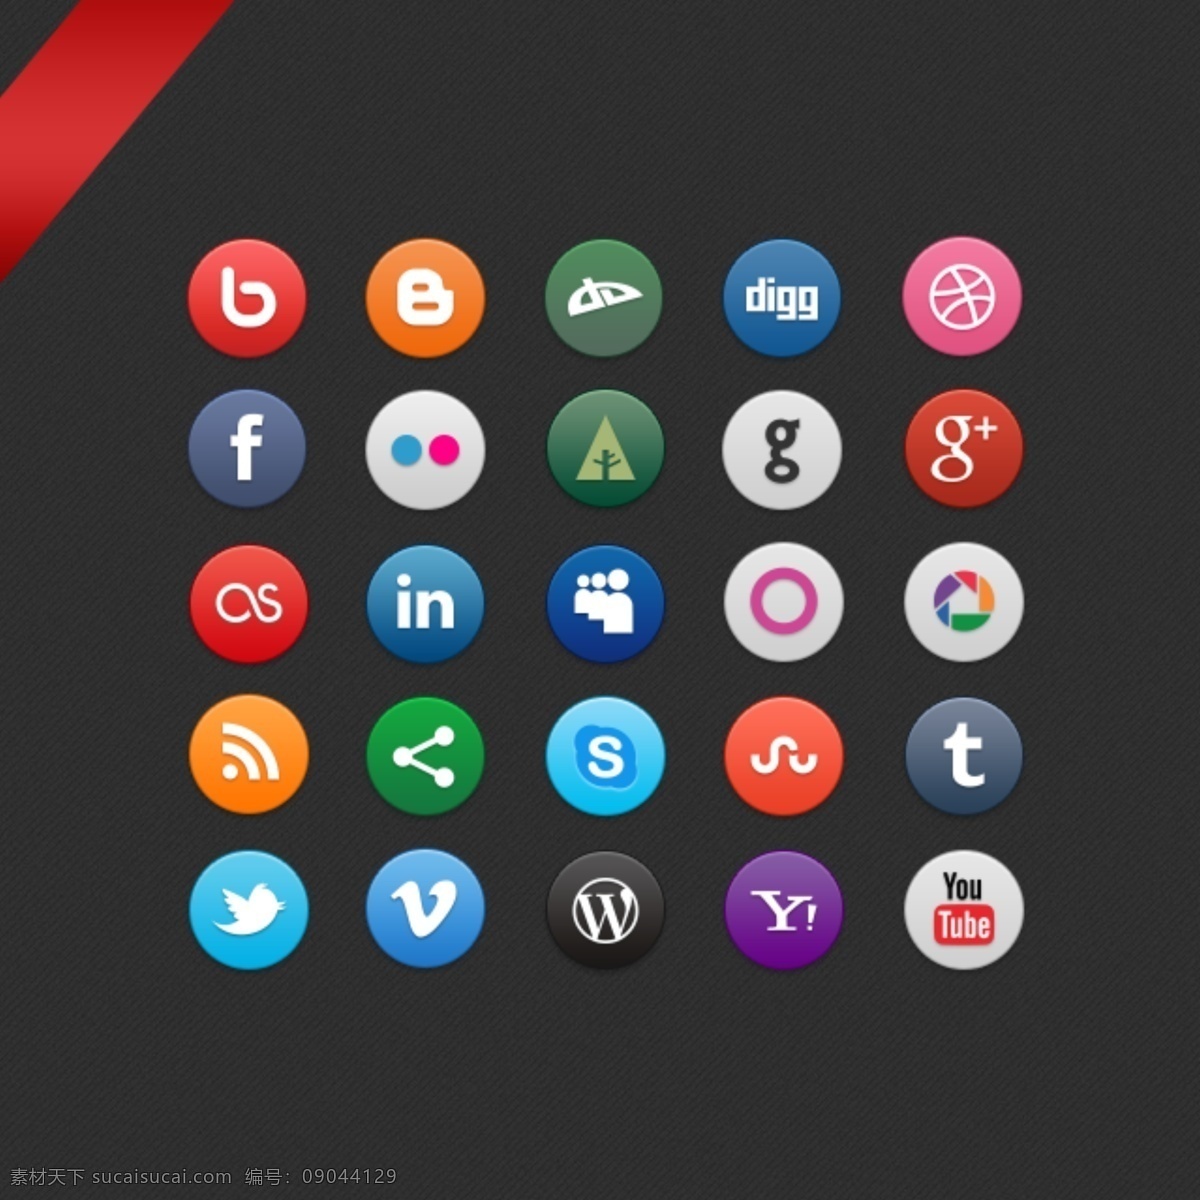 圆形 社交 多媒体 图标 设计素材 社交图标 多媒体图标 icon 社交icon 网页icon icon设计 苹果图标 wifi 汽车 网页图标